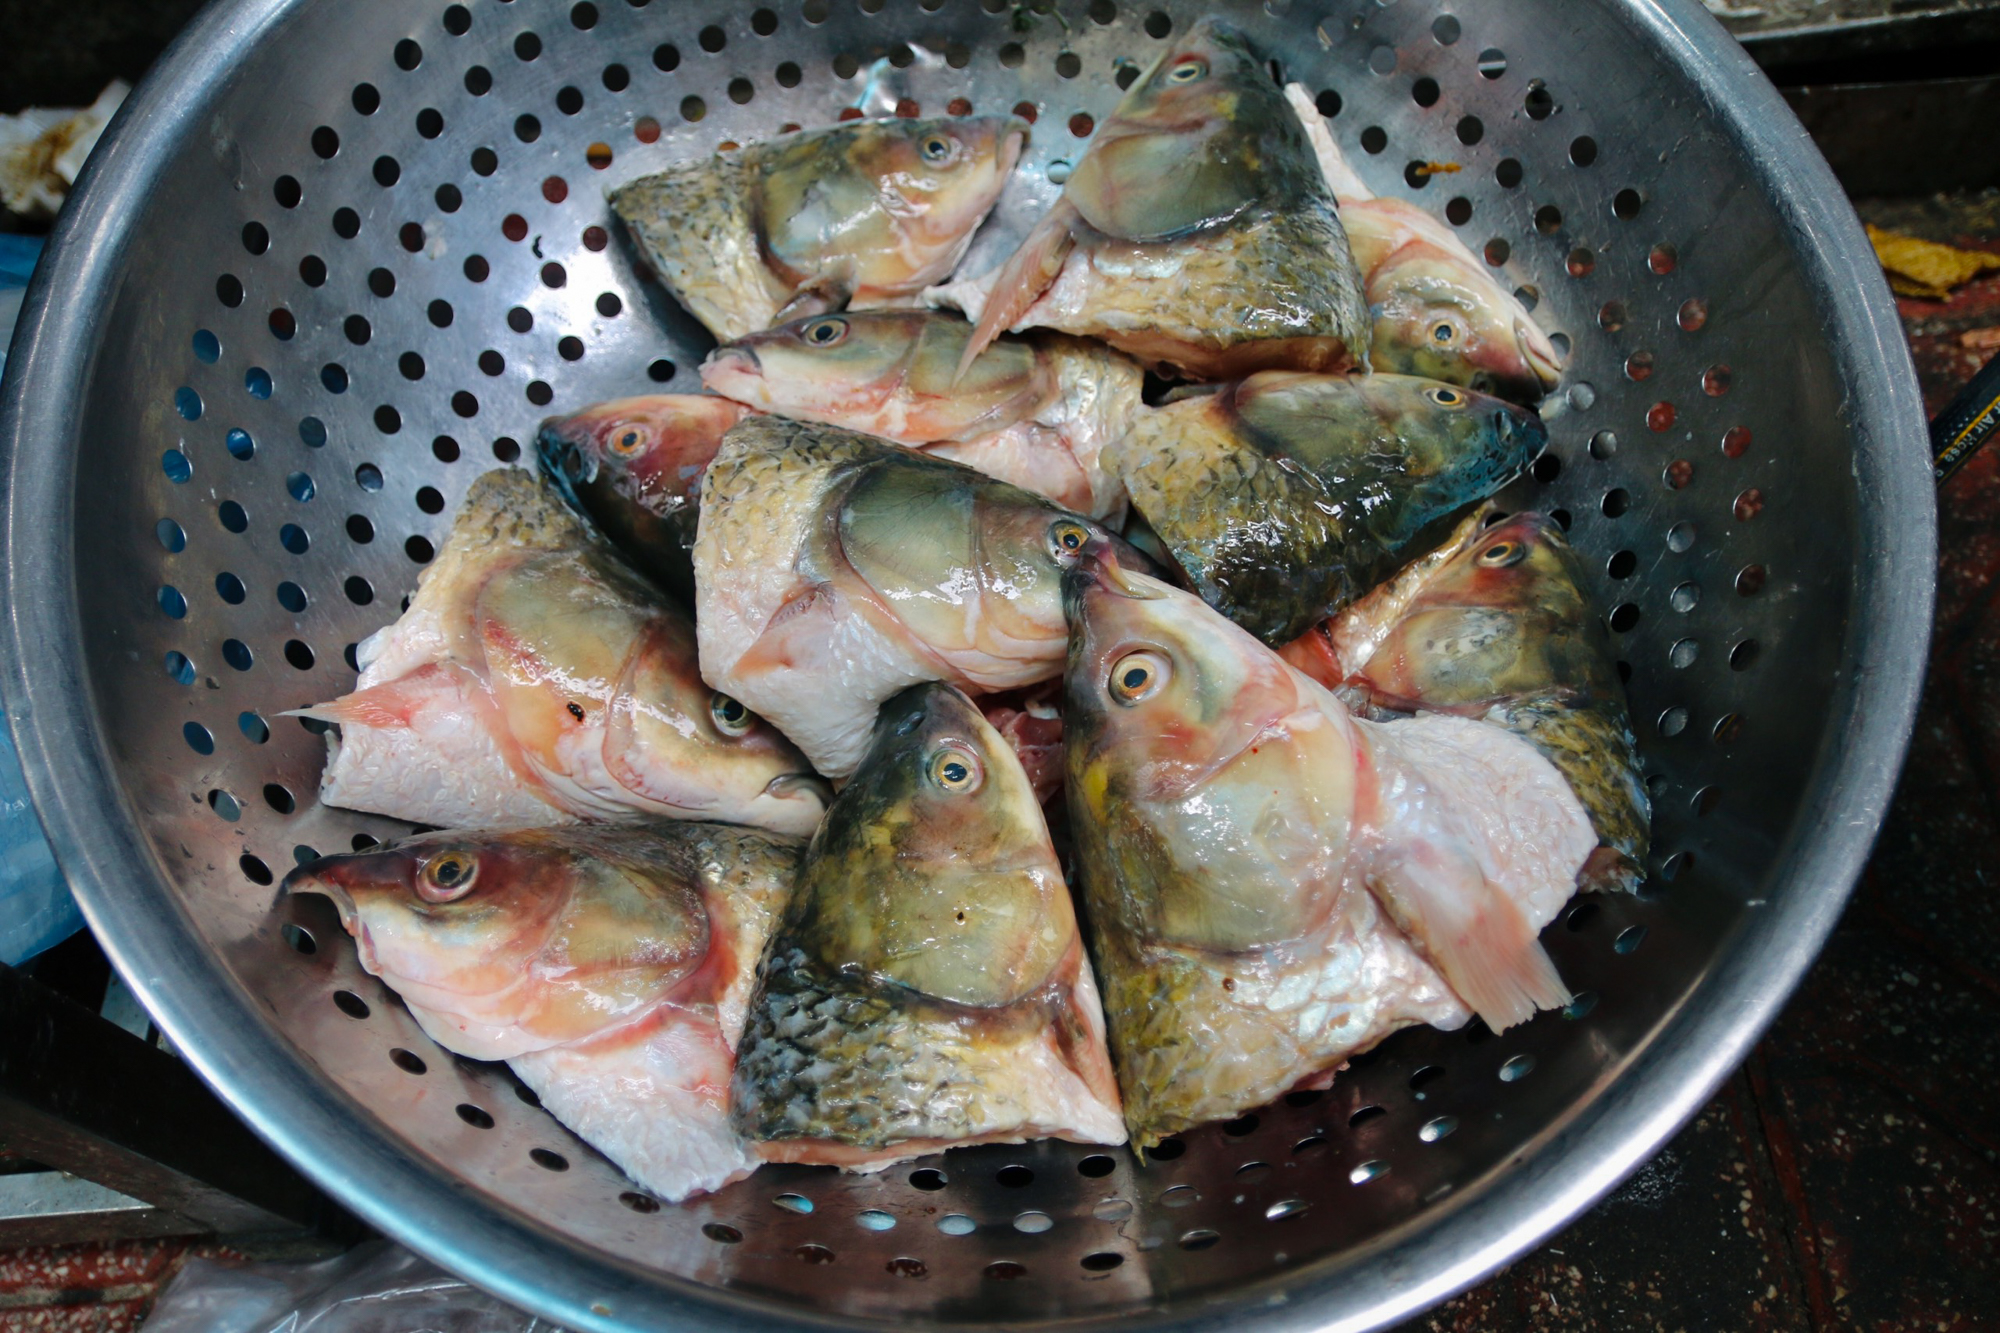 Quán bún đầu cá hiếm hoi ở Hà Nội, siêu đông khách nhờ tận dụng thứ bỏ đi - Ảnh 3.